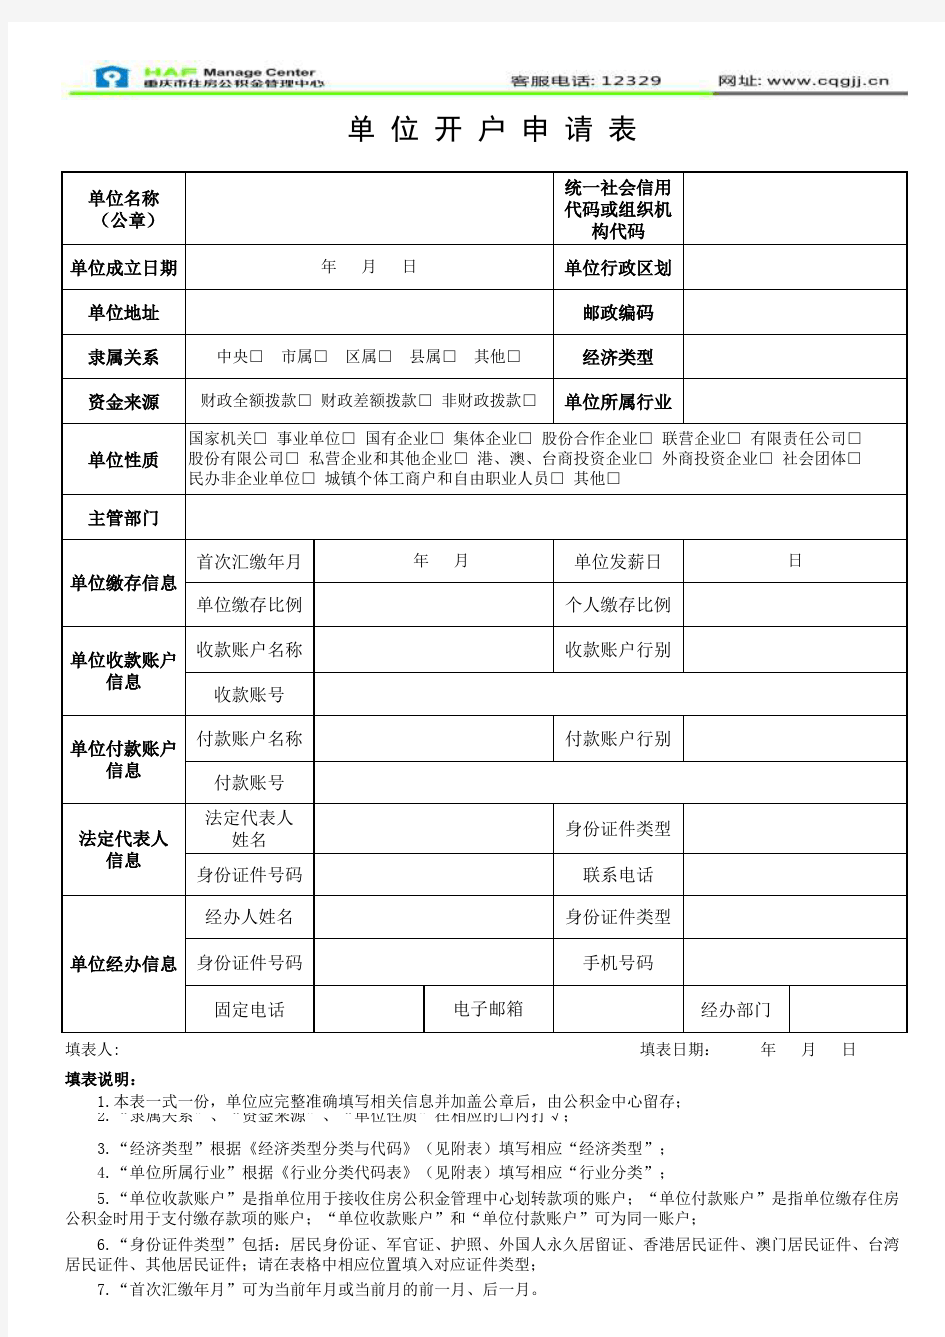 重庆住房公积金单位开户申请表